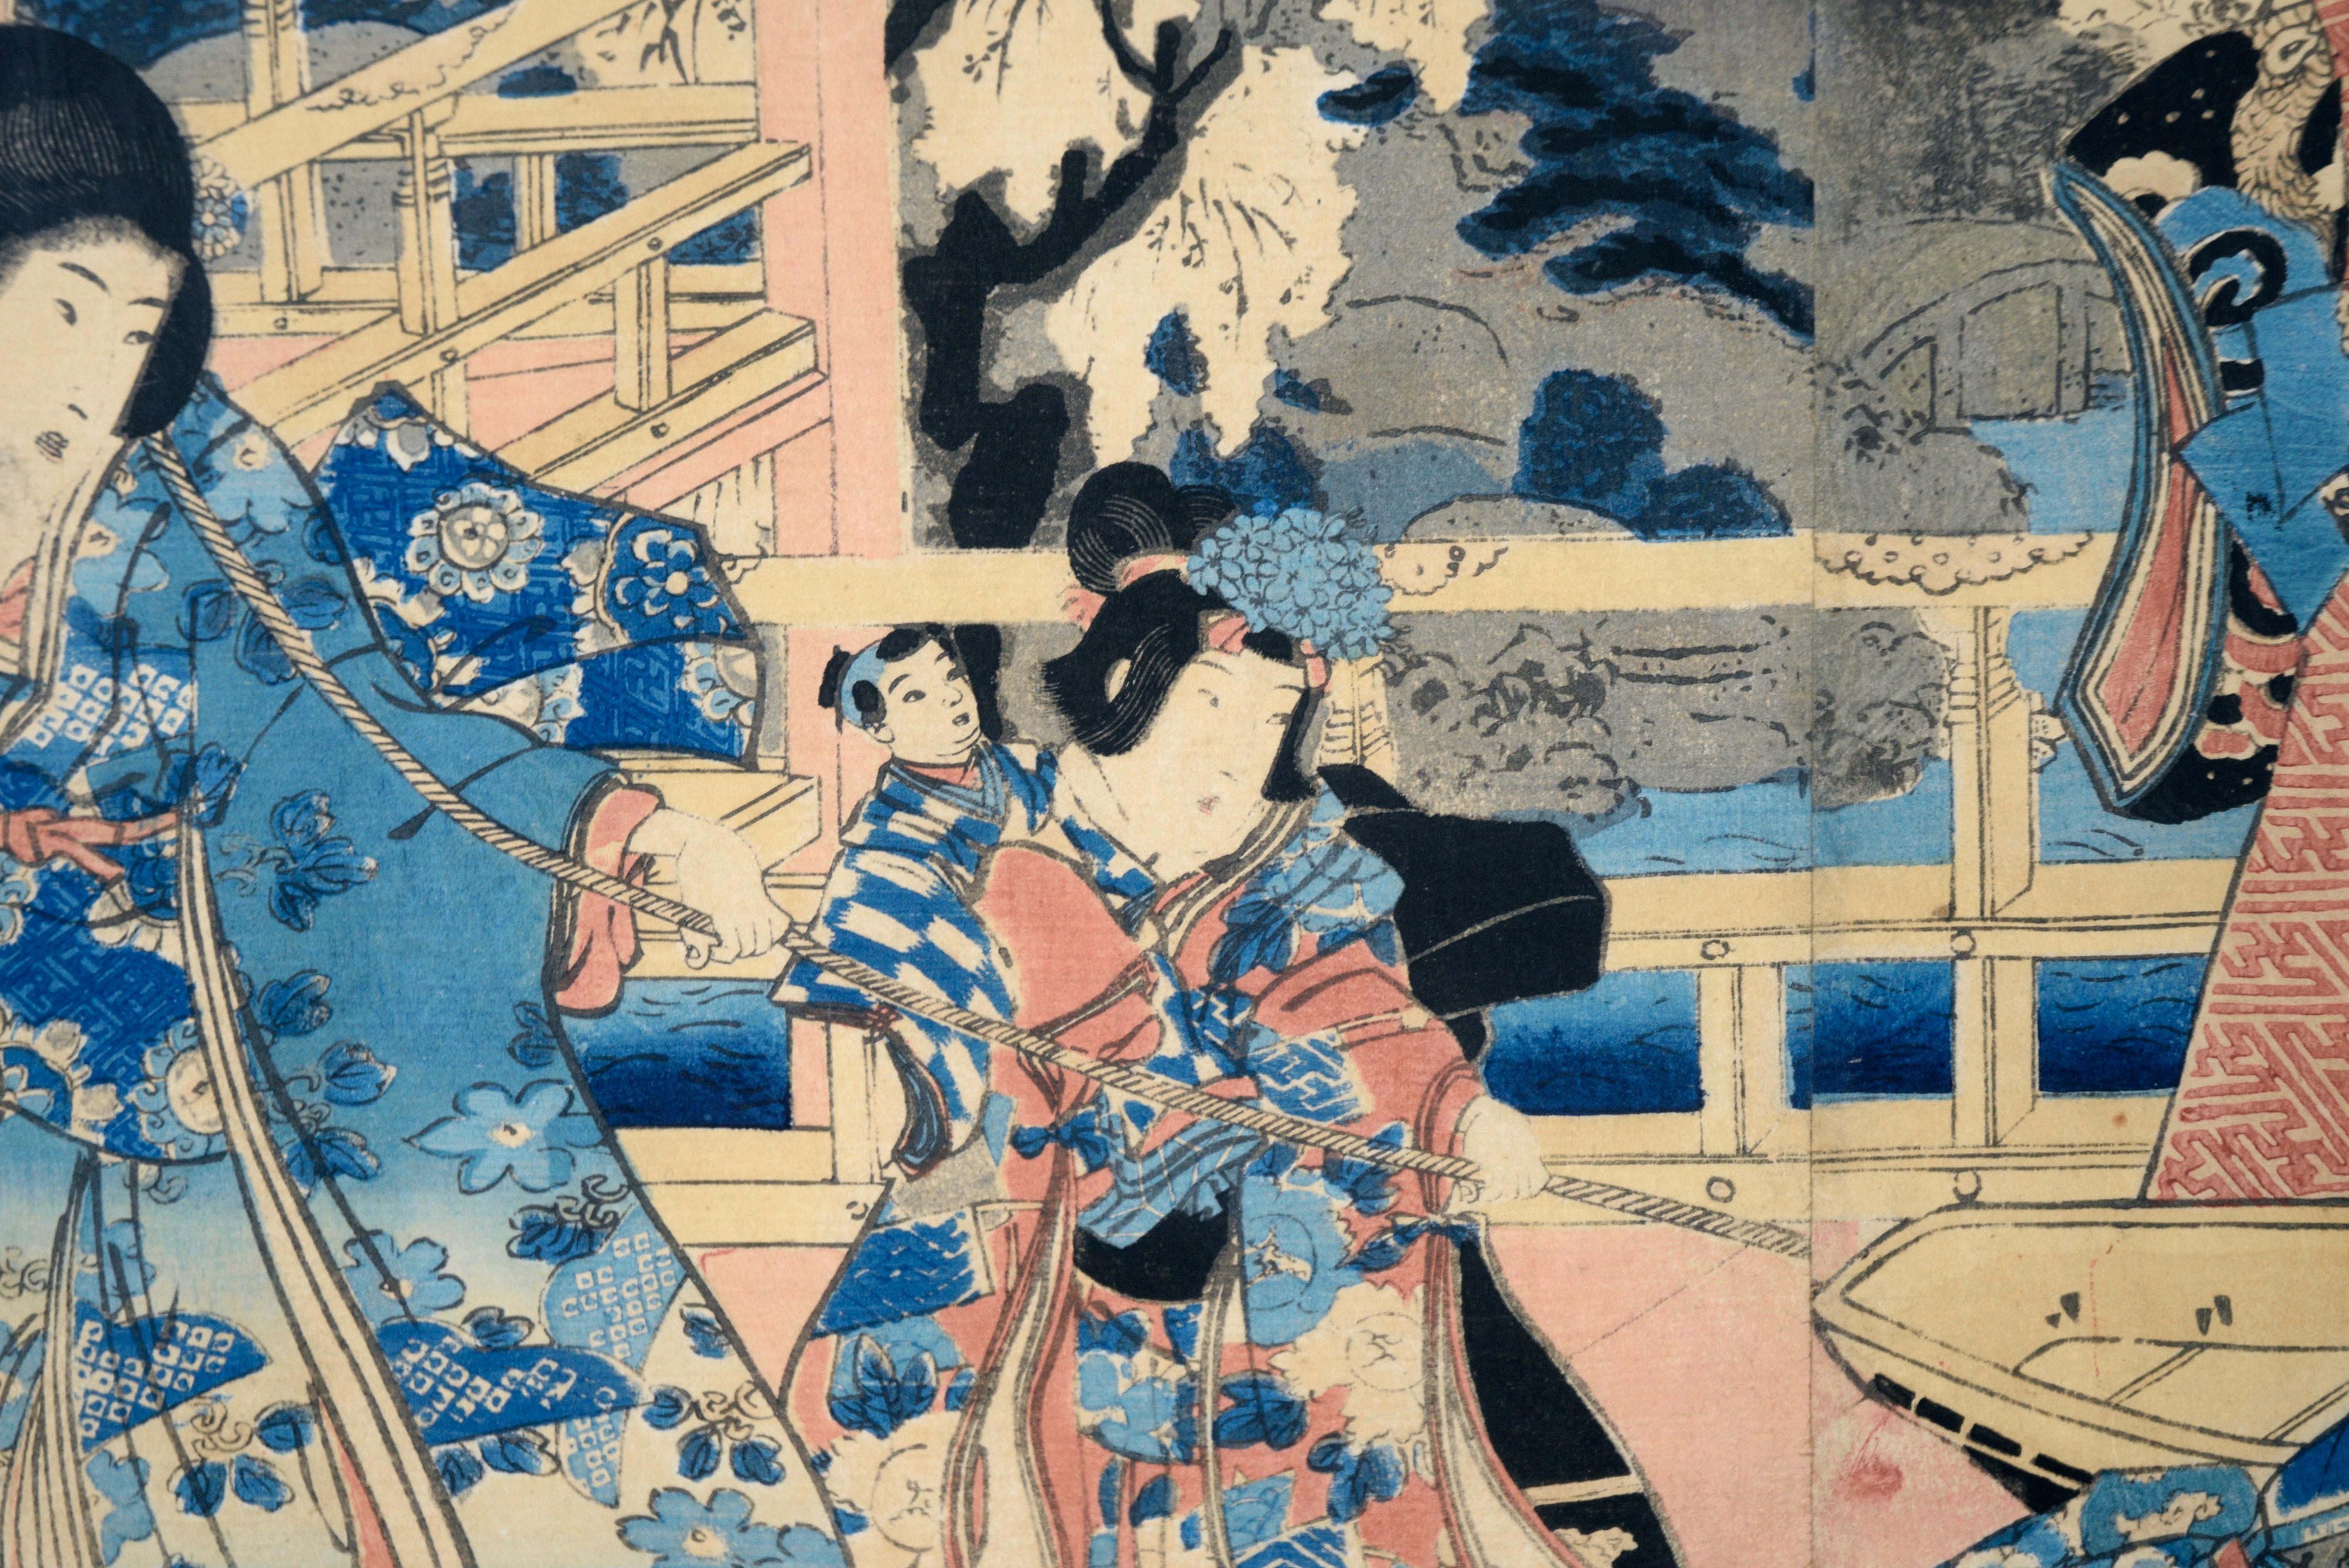 Élégantes expositions de Genji orientales - Triptyque japonais - Impression sur papier de bloc de bois

Gravure sur bois dynamique représentant plusieurs personnages élégamment vêtus, réalisée par Utagawa Kunisada I (Toyokuni III) (Japonais,